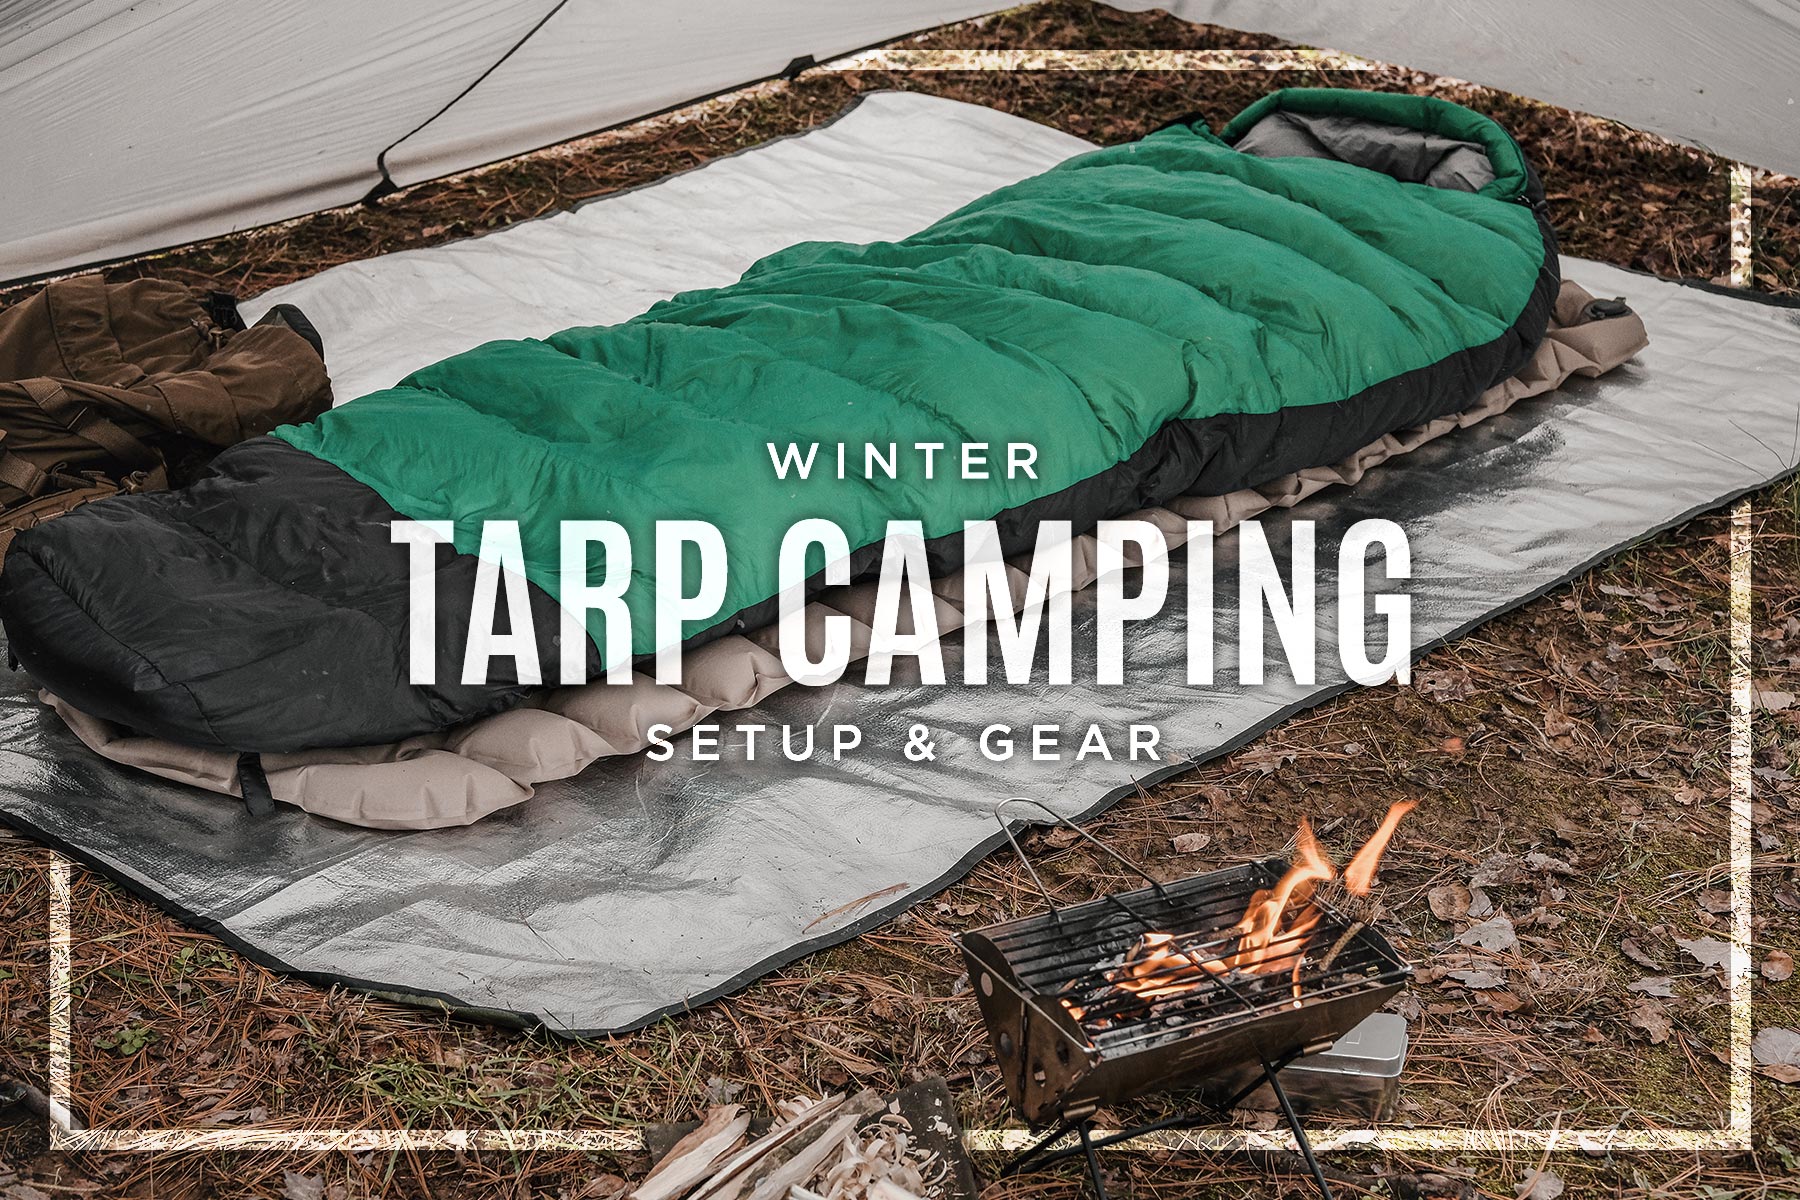 Winter Tarp Camping Gear